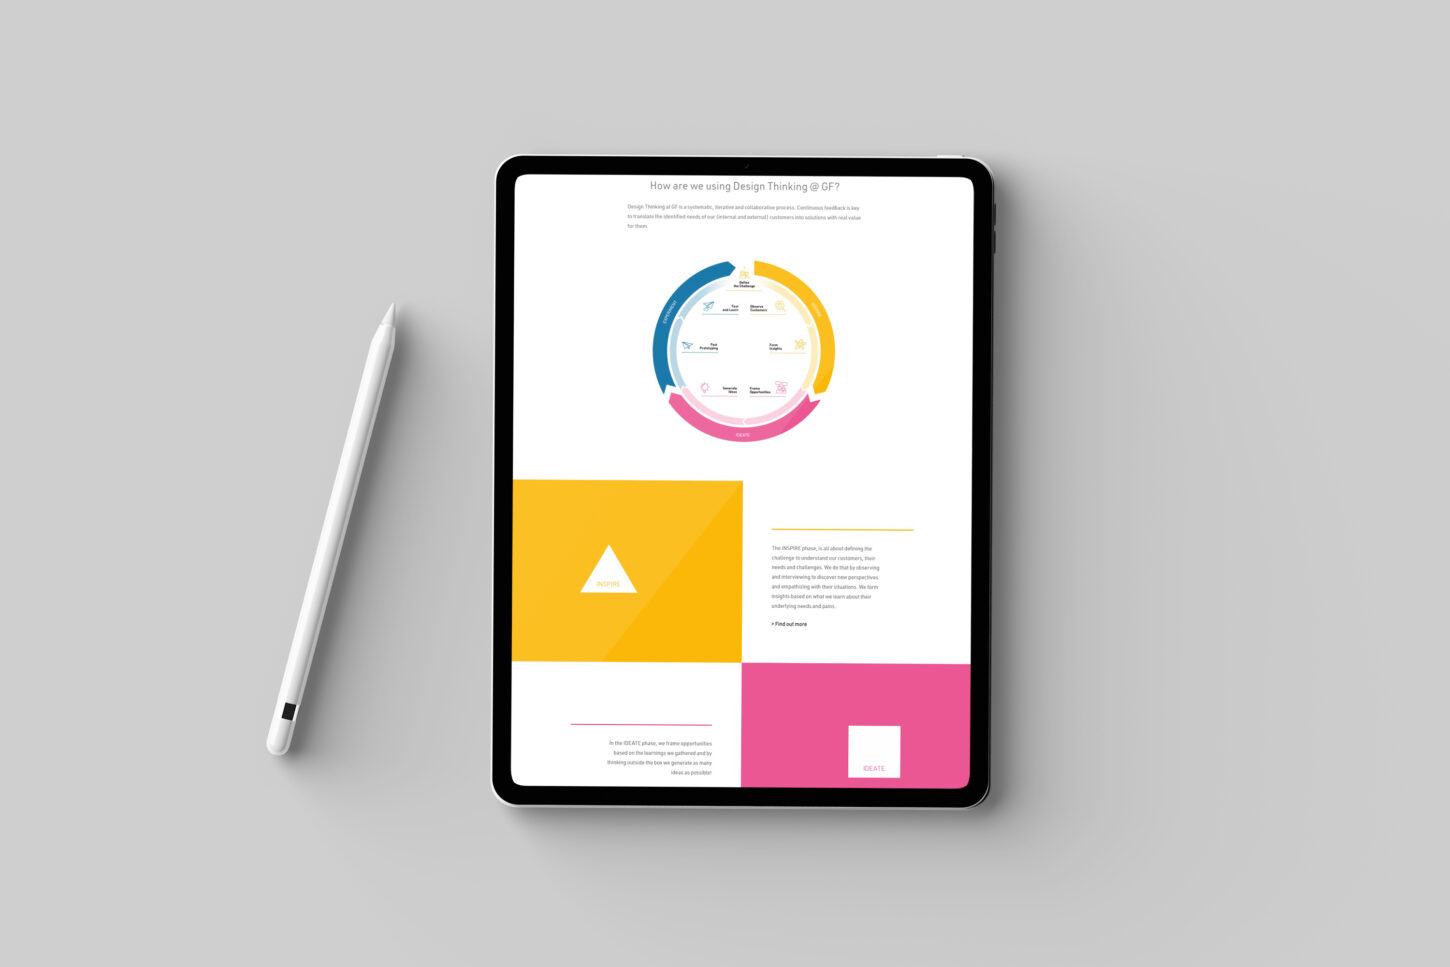 Die neue Design Thinking Website von Georg Fischer auf einem iPad.